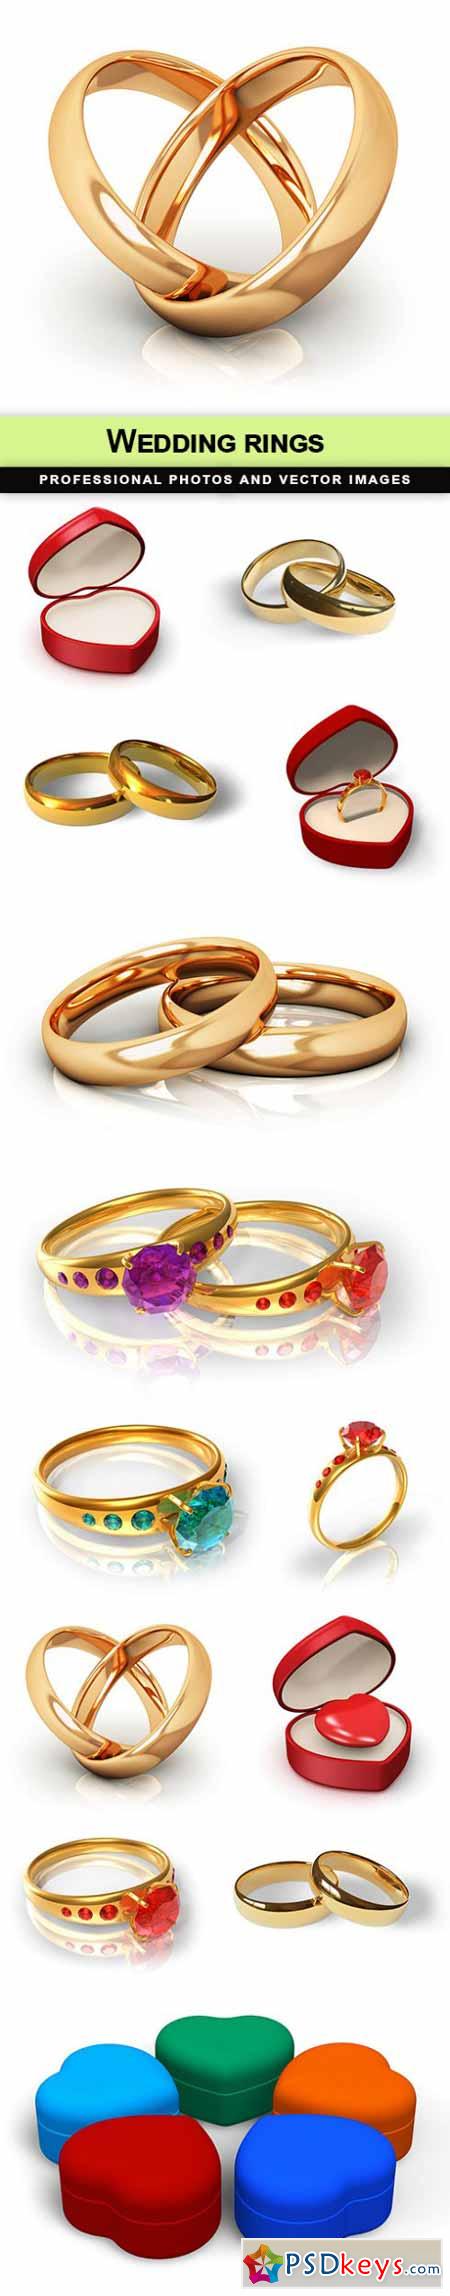 Wedding rings - 13 UHQ JPEG